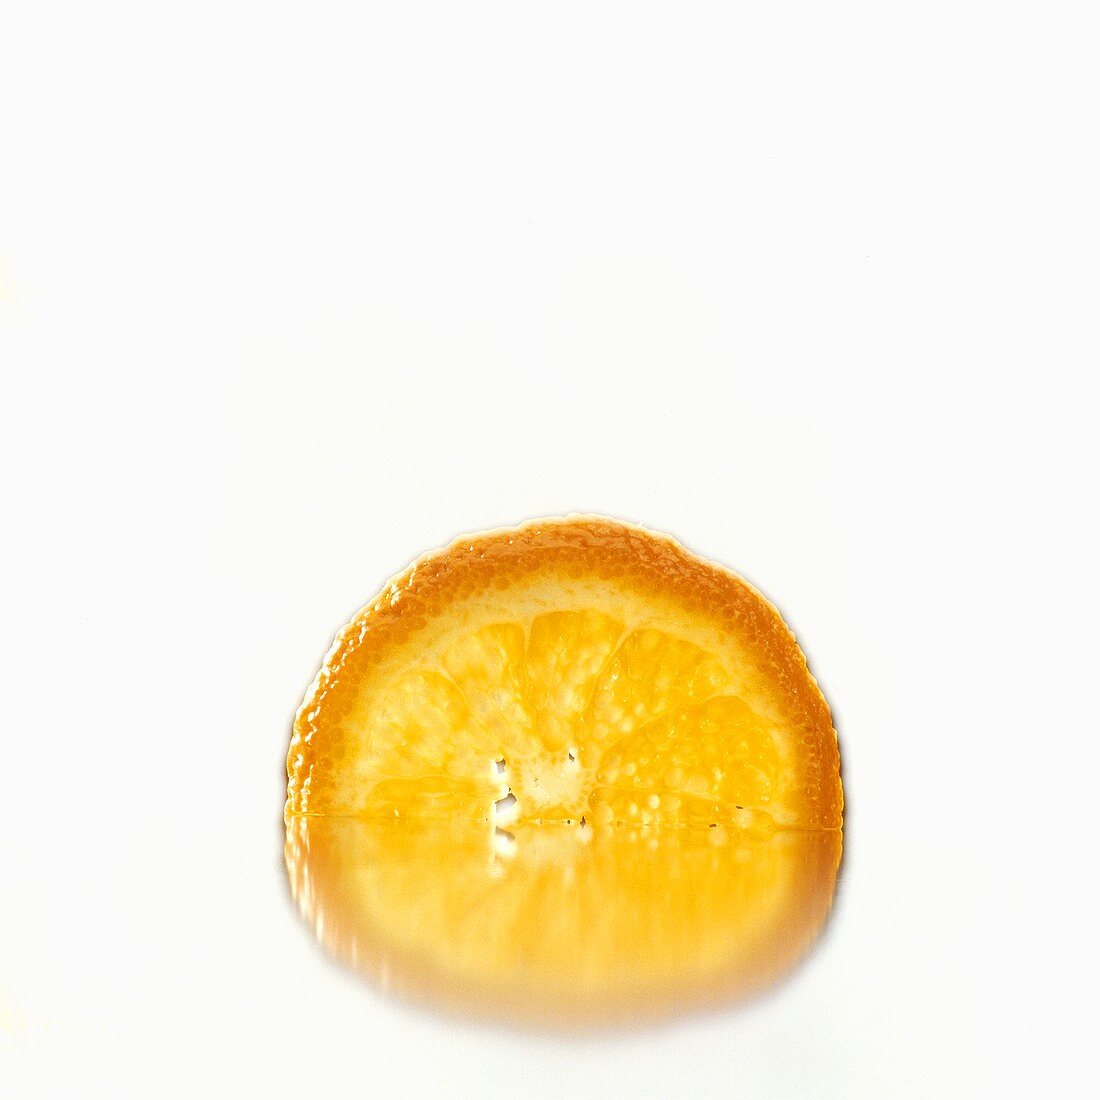 Half a slice of orange